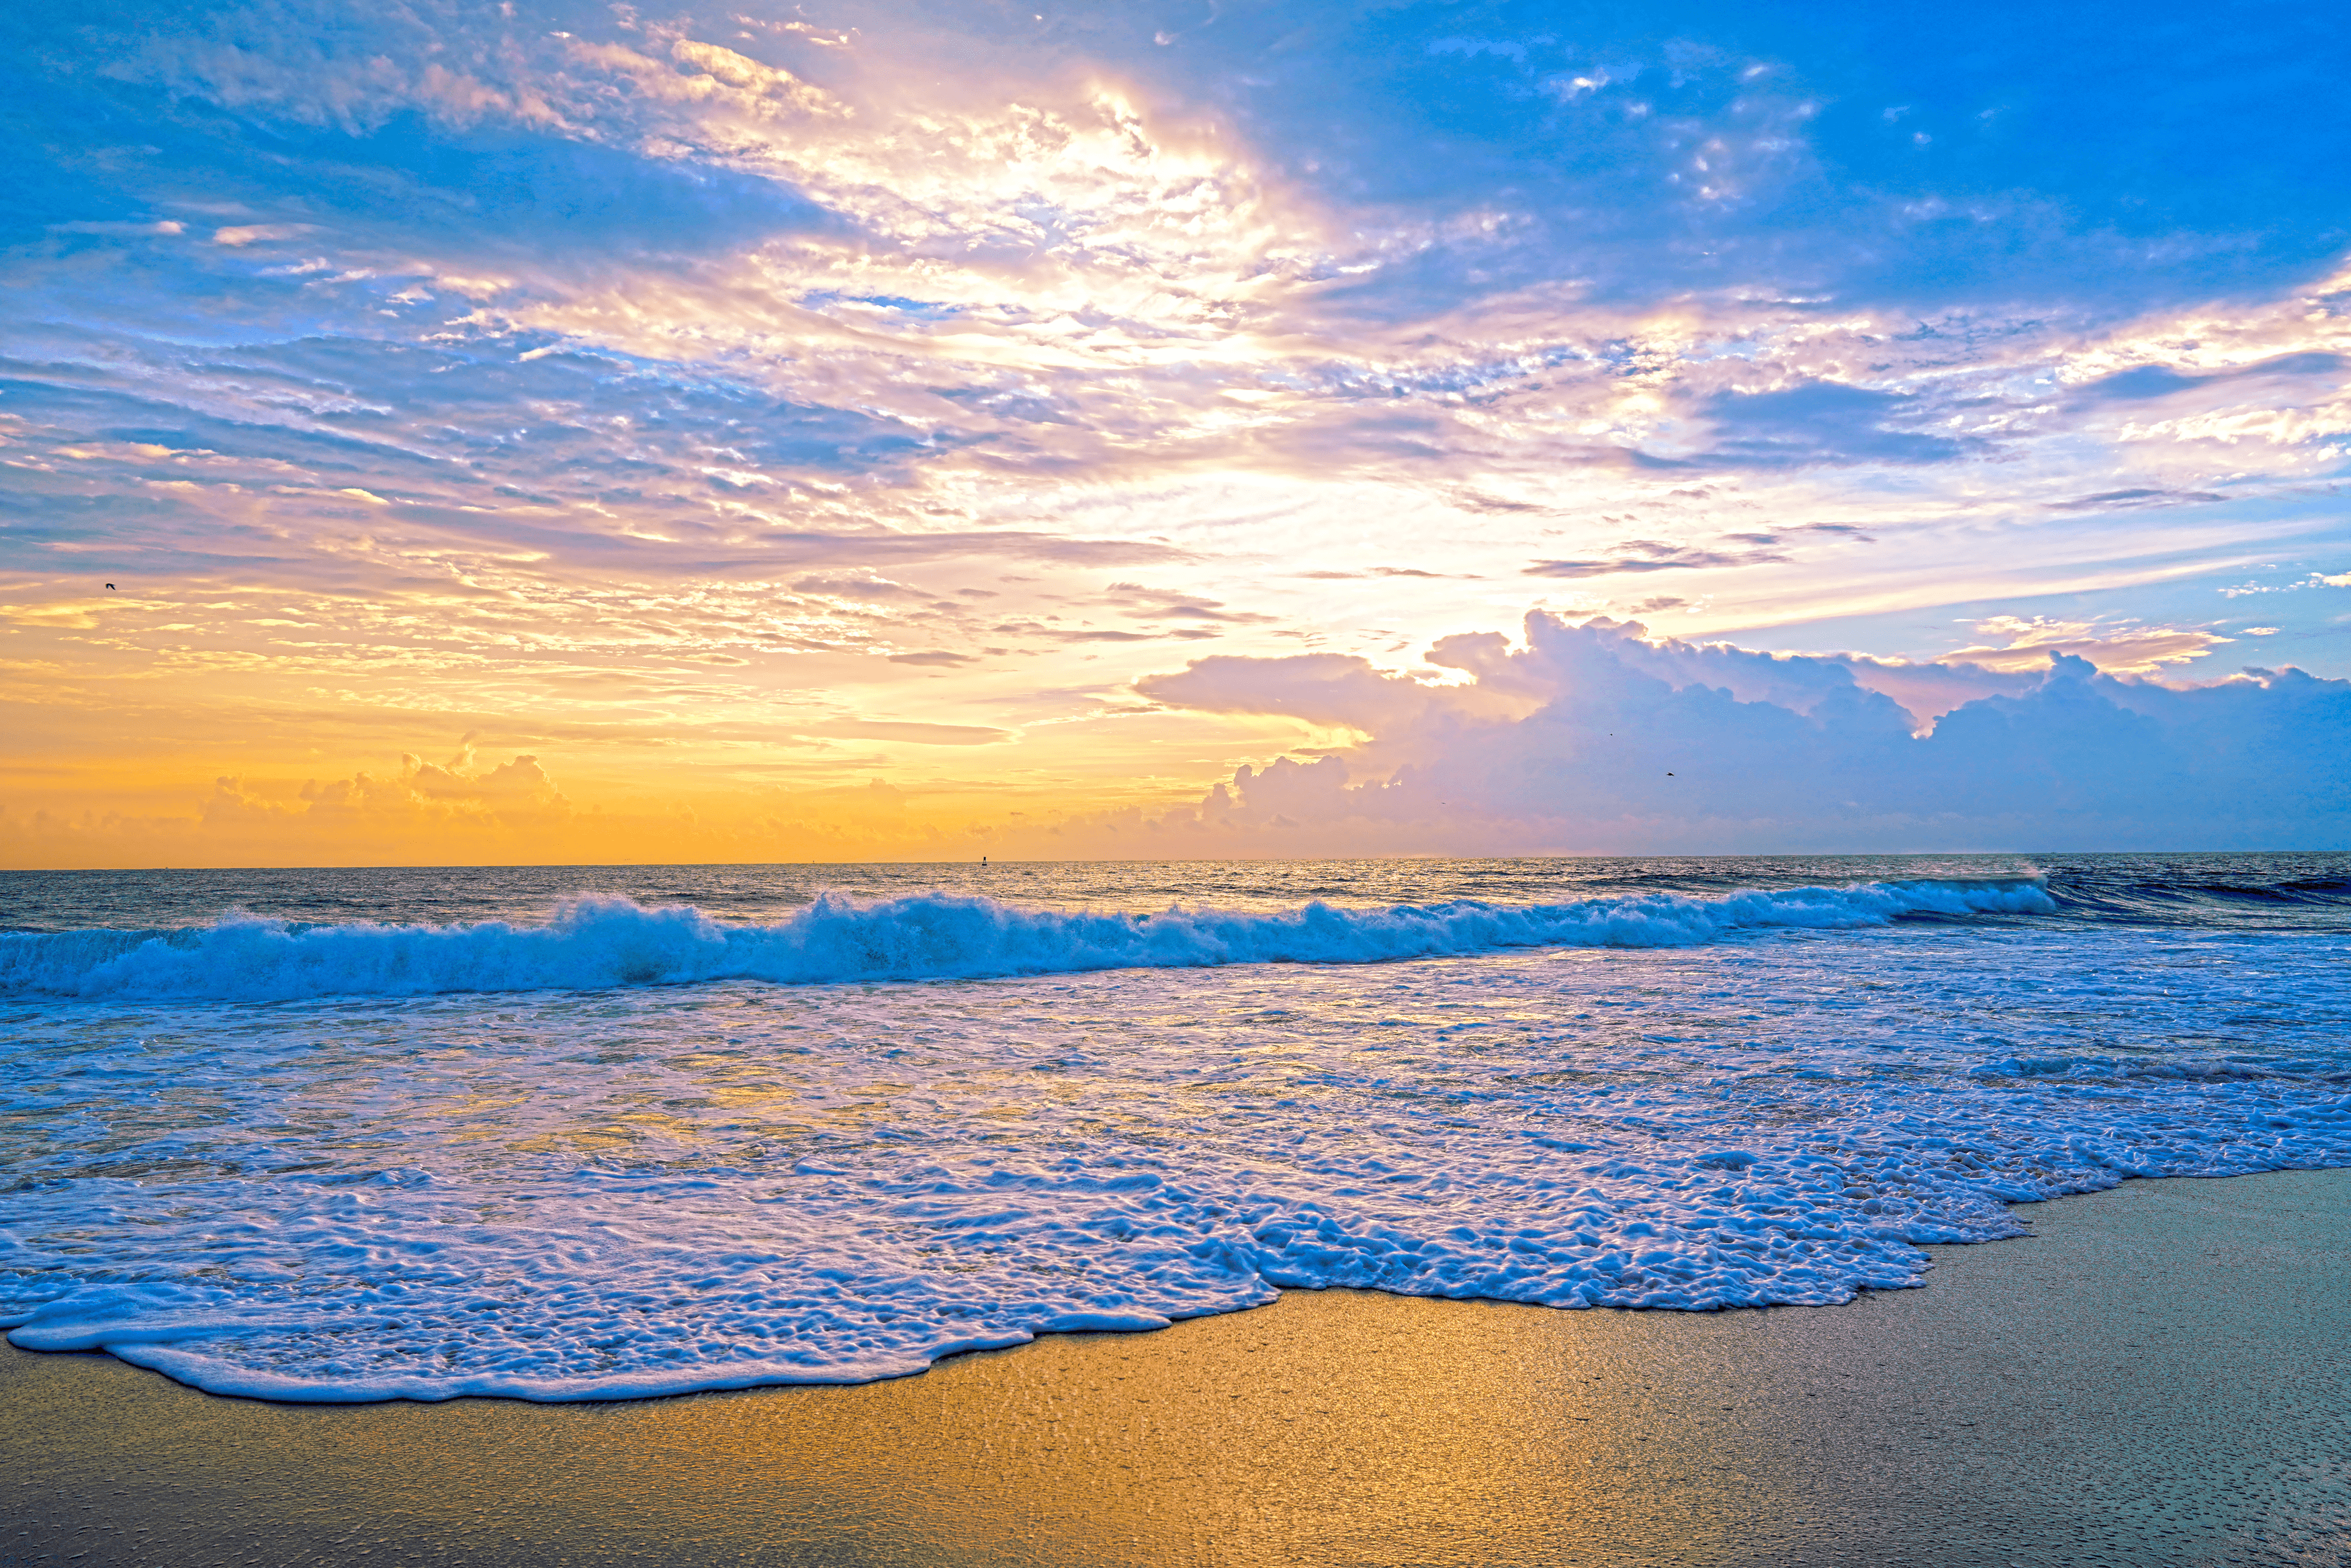 Afterglow 2 - Sunset Florida Keys